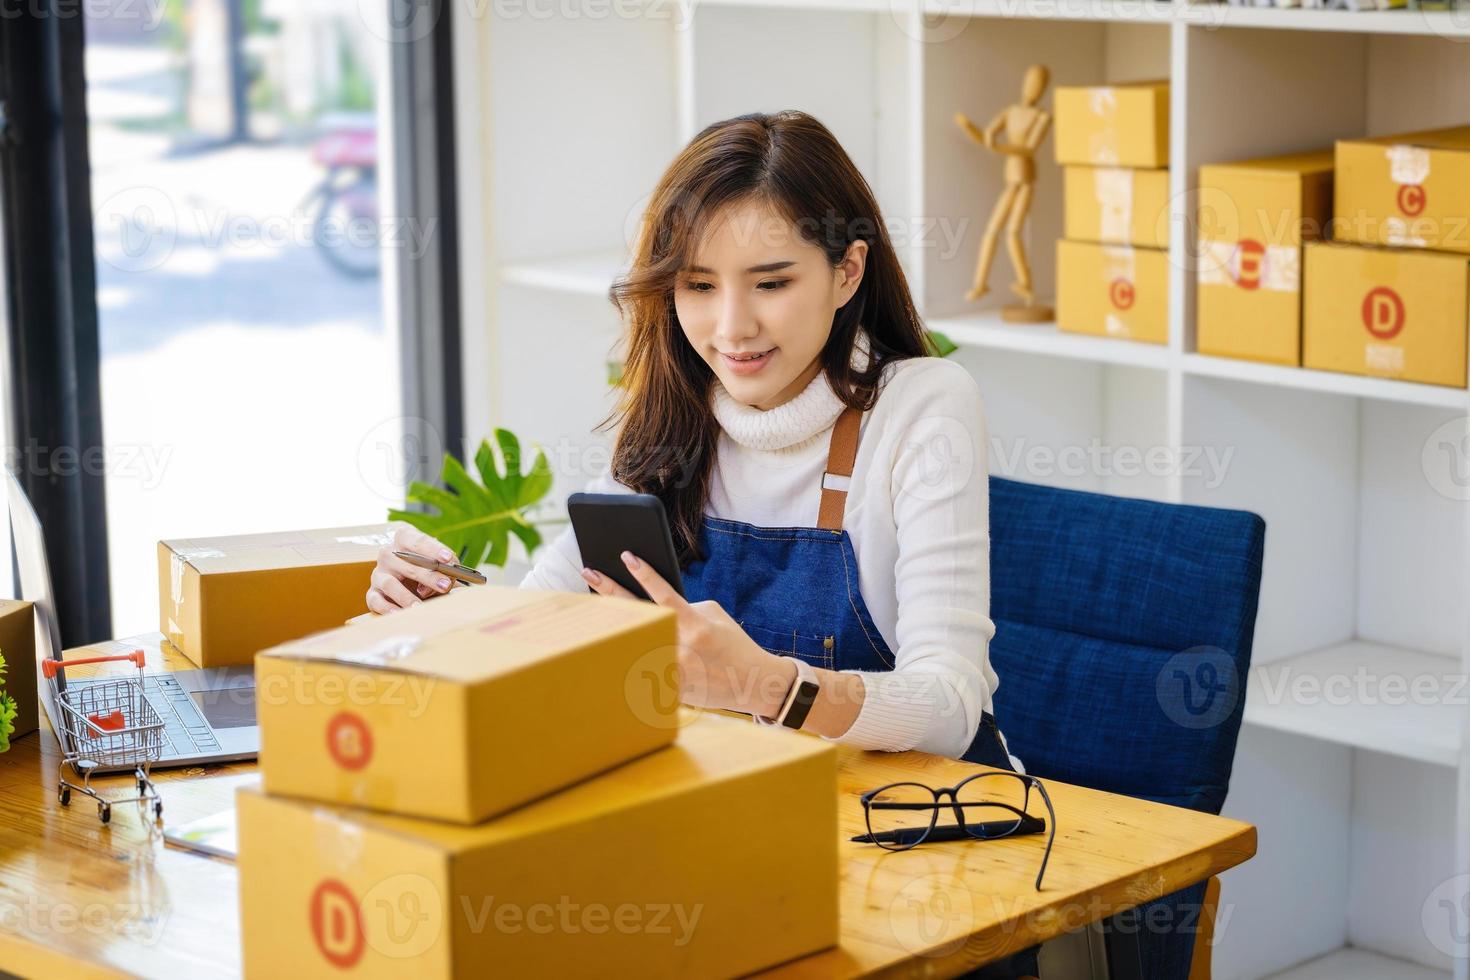 trabalho a partir de casa. mulheres felizes que vendem produtos on-line iniciam uma pequena empresa usando smartphone e laptop para calcular preços e se preparar para postagem. foto